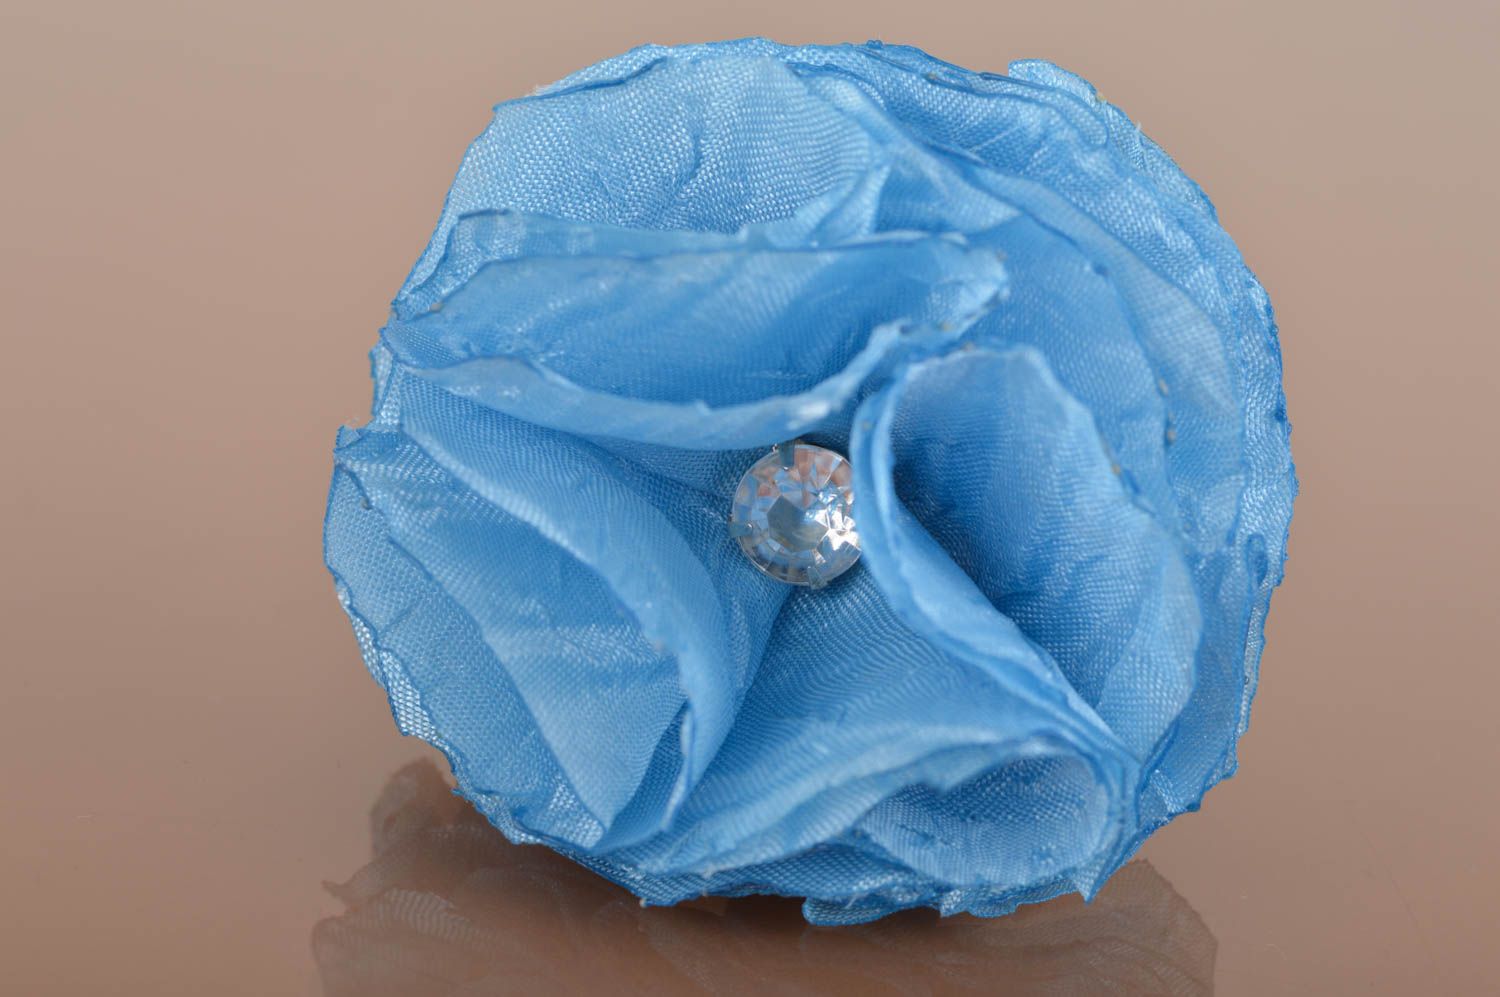 Брошь из ткани ручной работы красивая в виде цветка пышная голубая со стразом фото 1